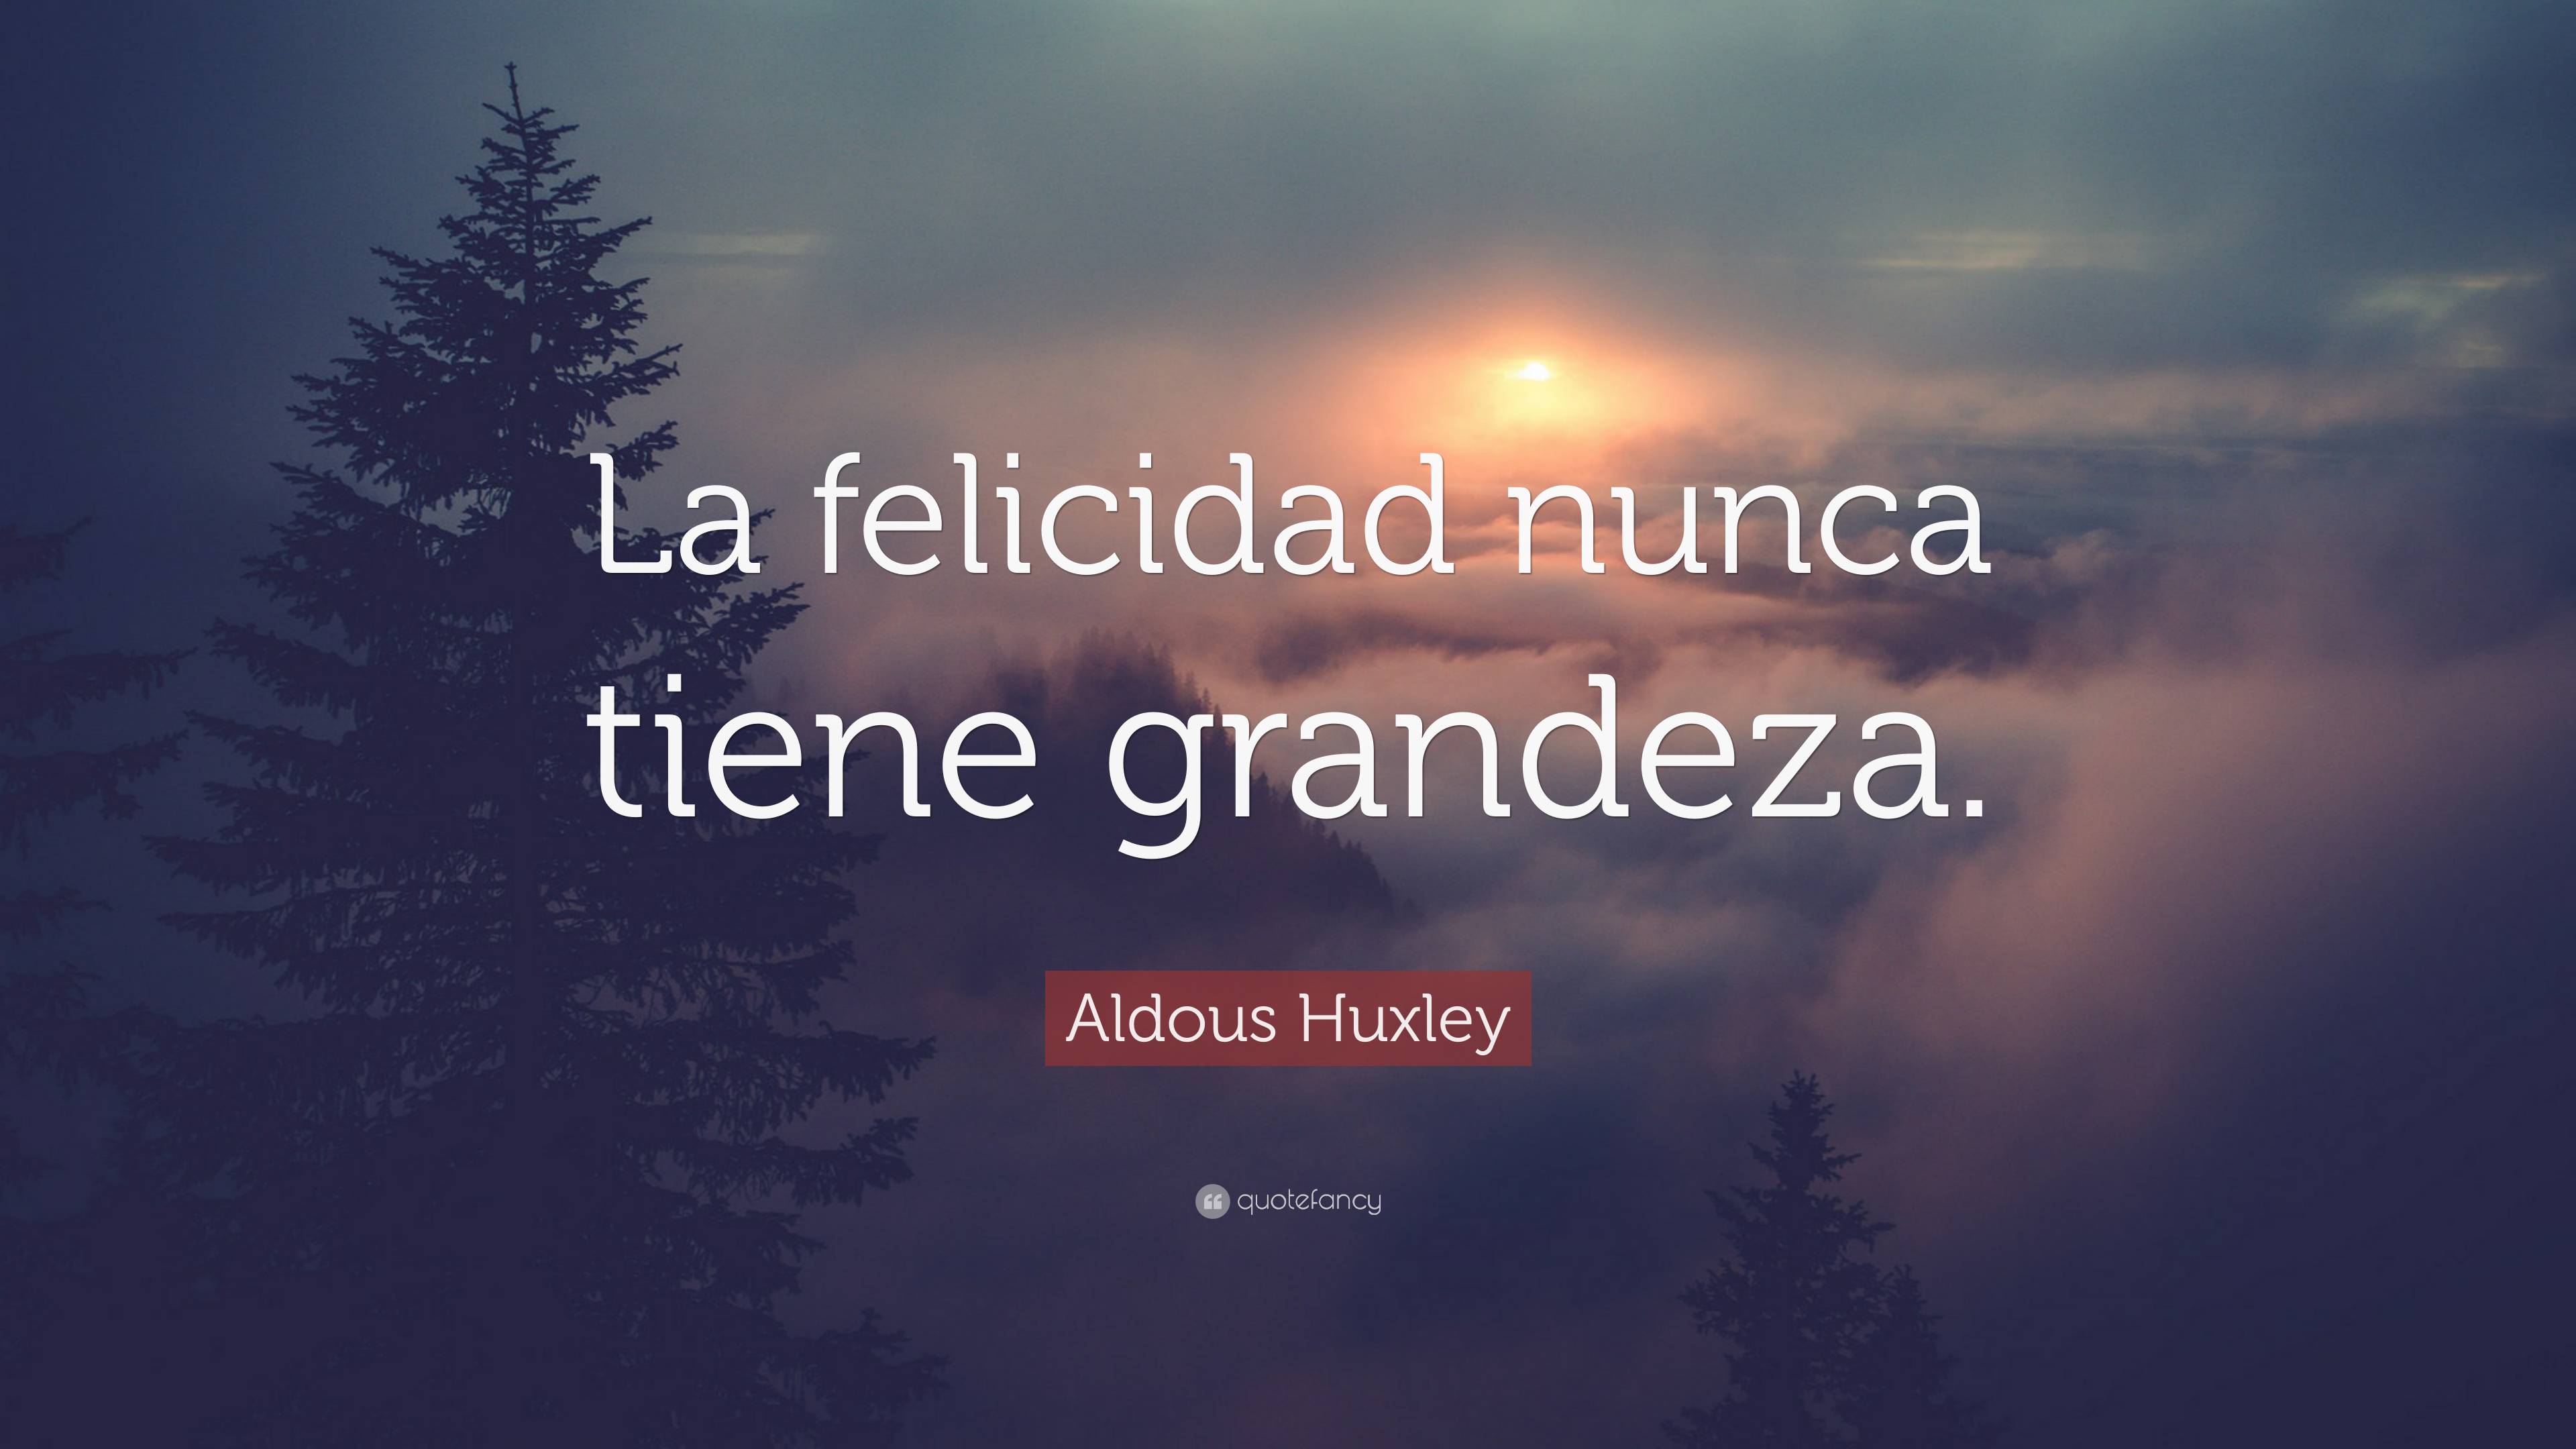 Aldous Huxley Quote: “La felicidad nunca tiene grandeza.”